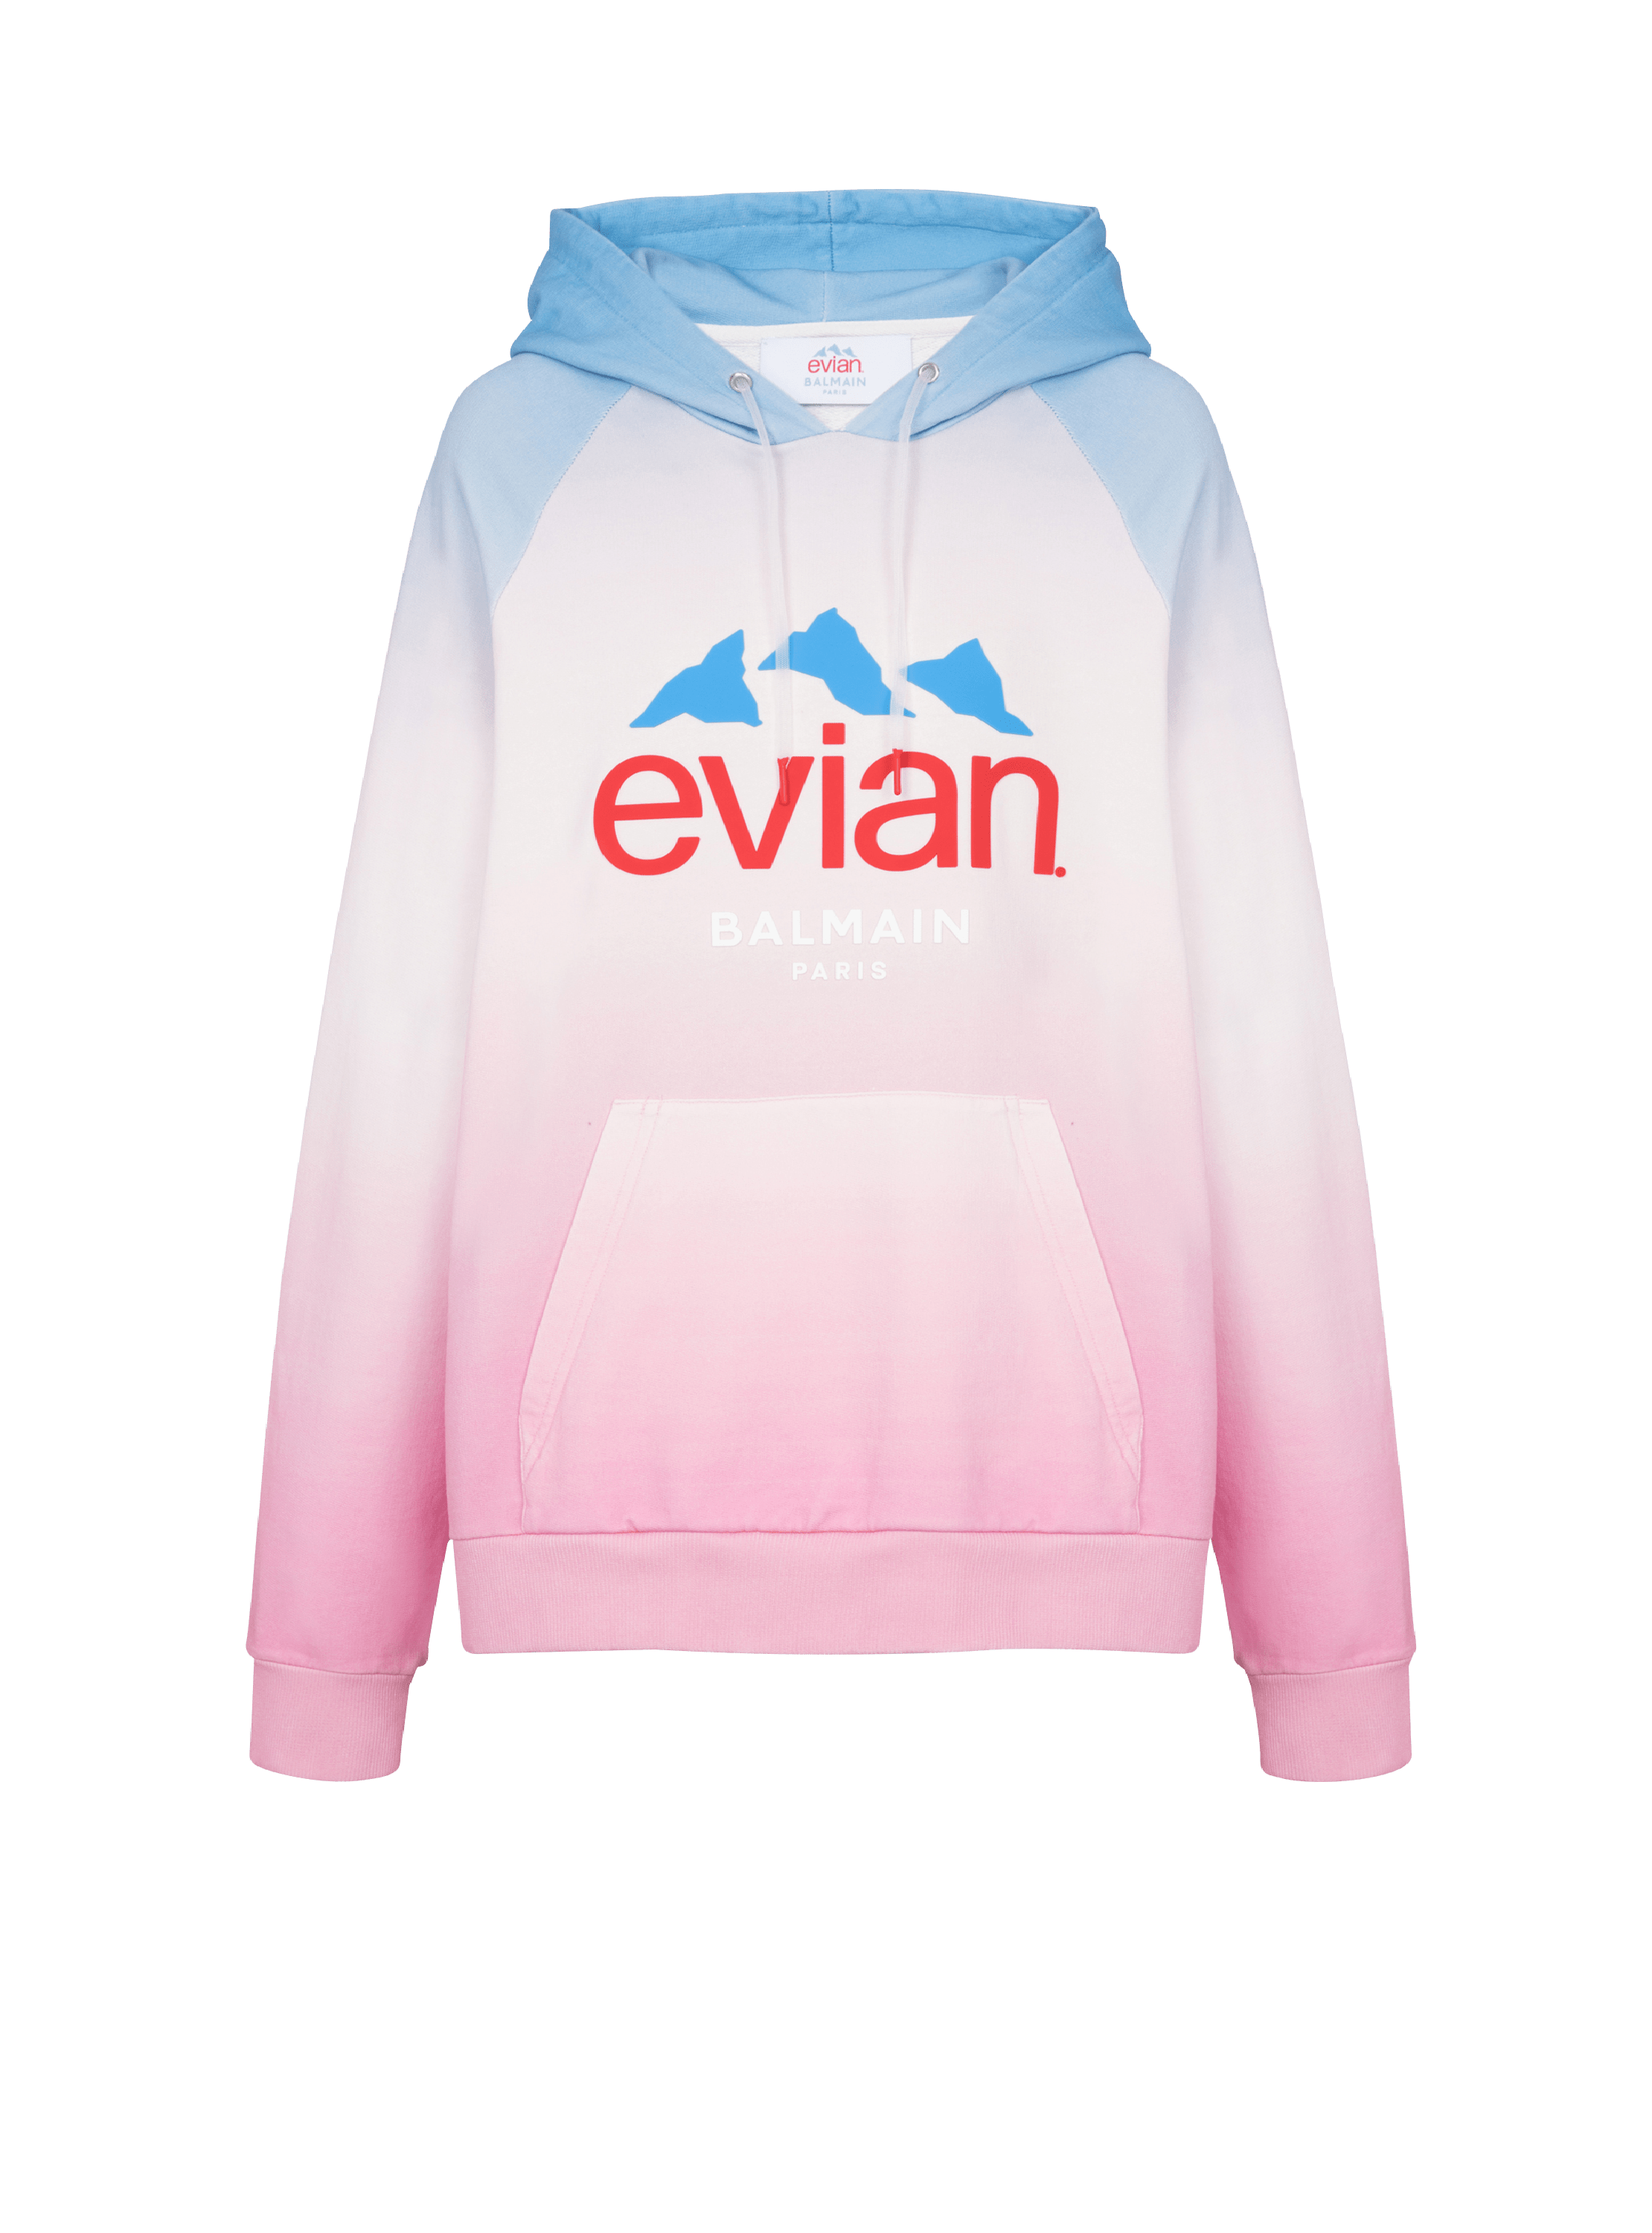 Balmain x Evian - グラデーション スウェットシャツ, 色とりどり, hi-res